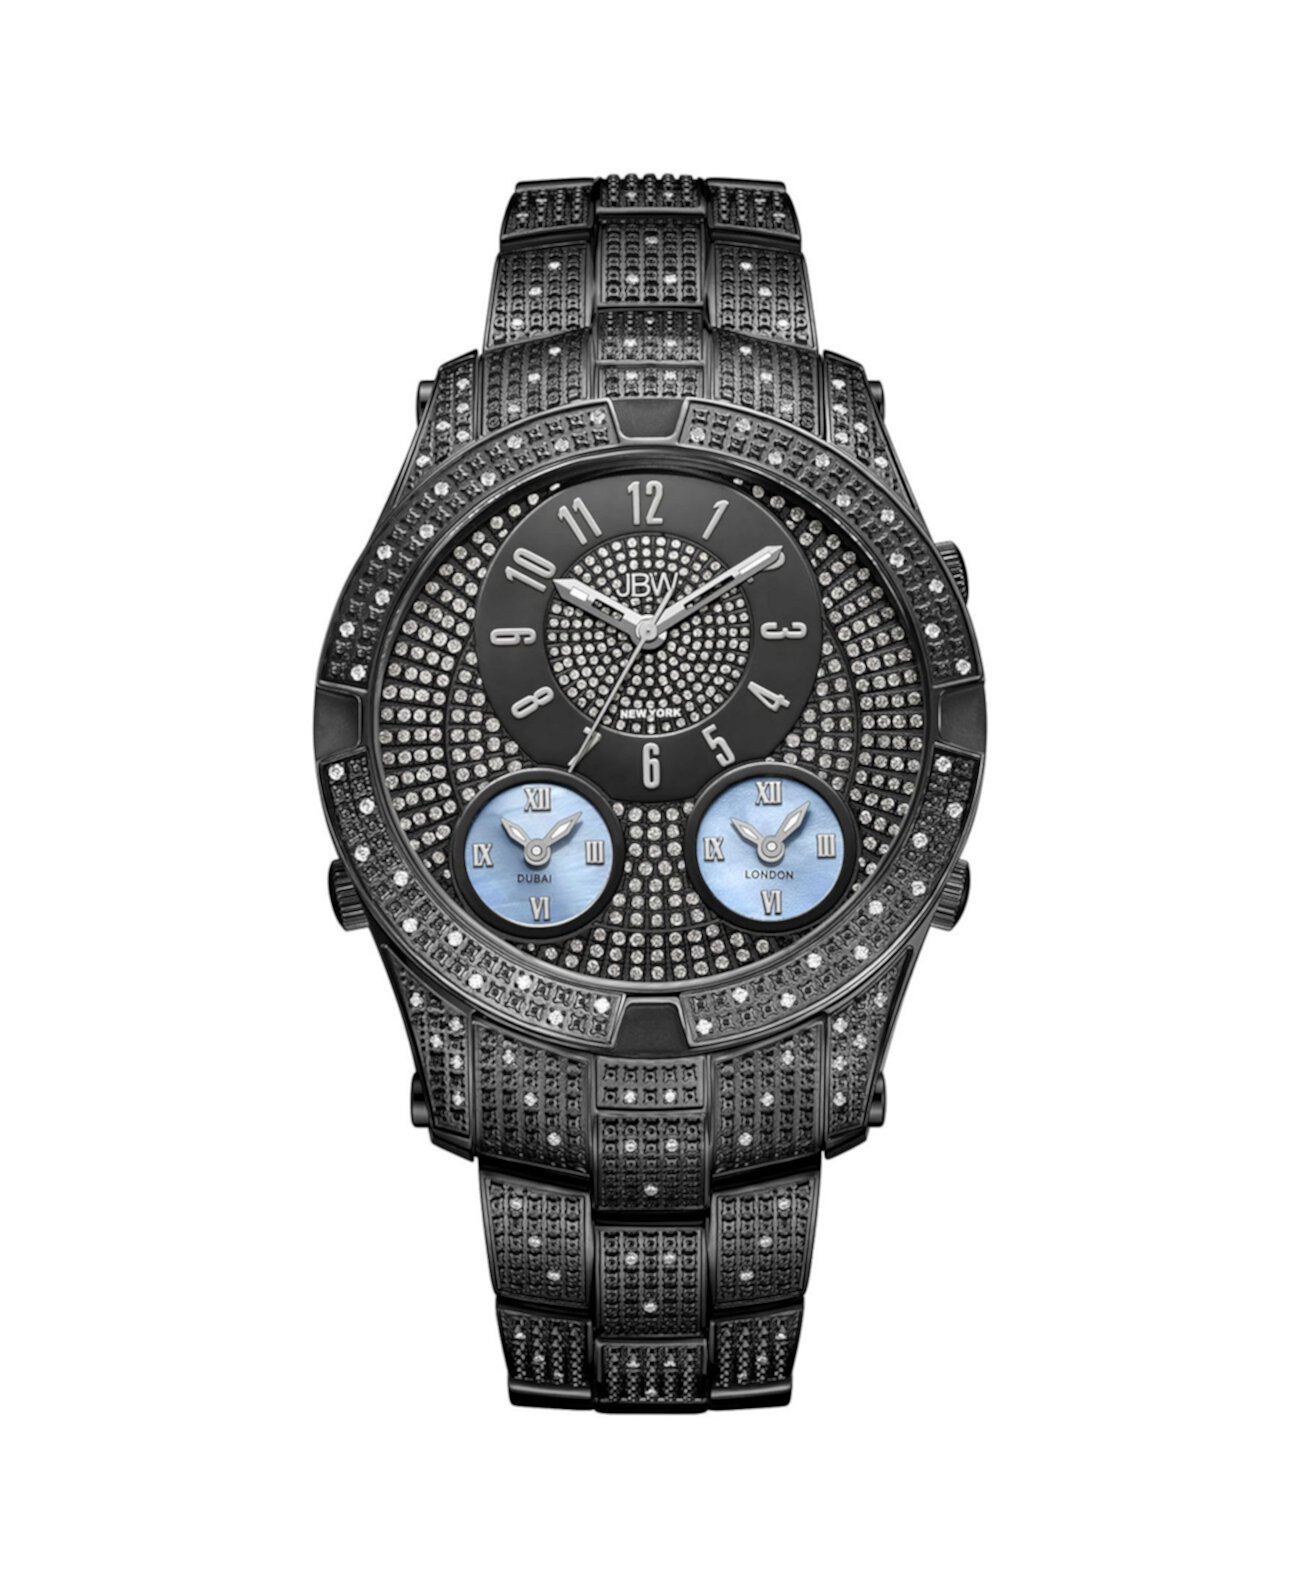 Мужские часы Jet Setter III Diamond (1 карат.т.), черные, покрытые ионами часы из нержавеющей стали JBW